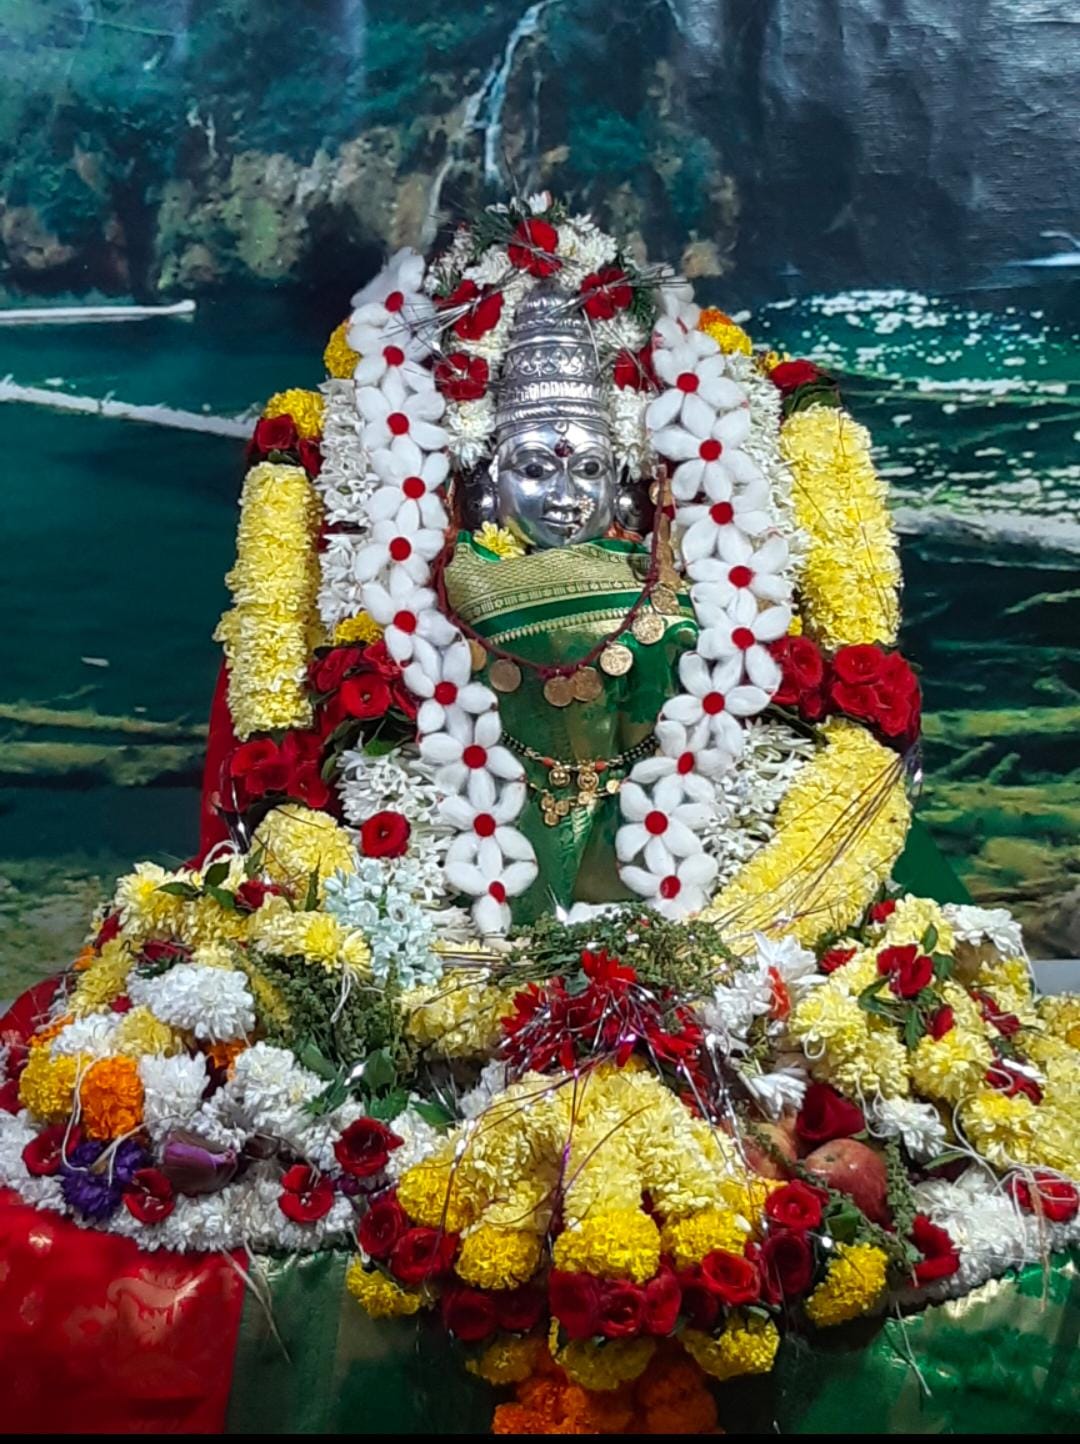 You are currently viewing दाभिल श्री देवी माऊली देवस्थानचा वार्षिक जत्रोत्सव रविवारी २४ डिसेंबर रोजी